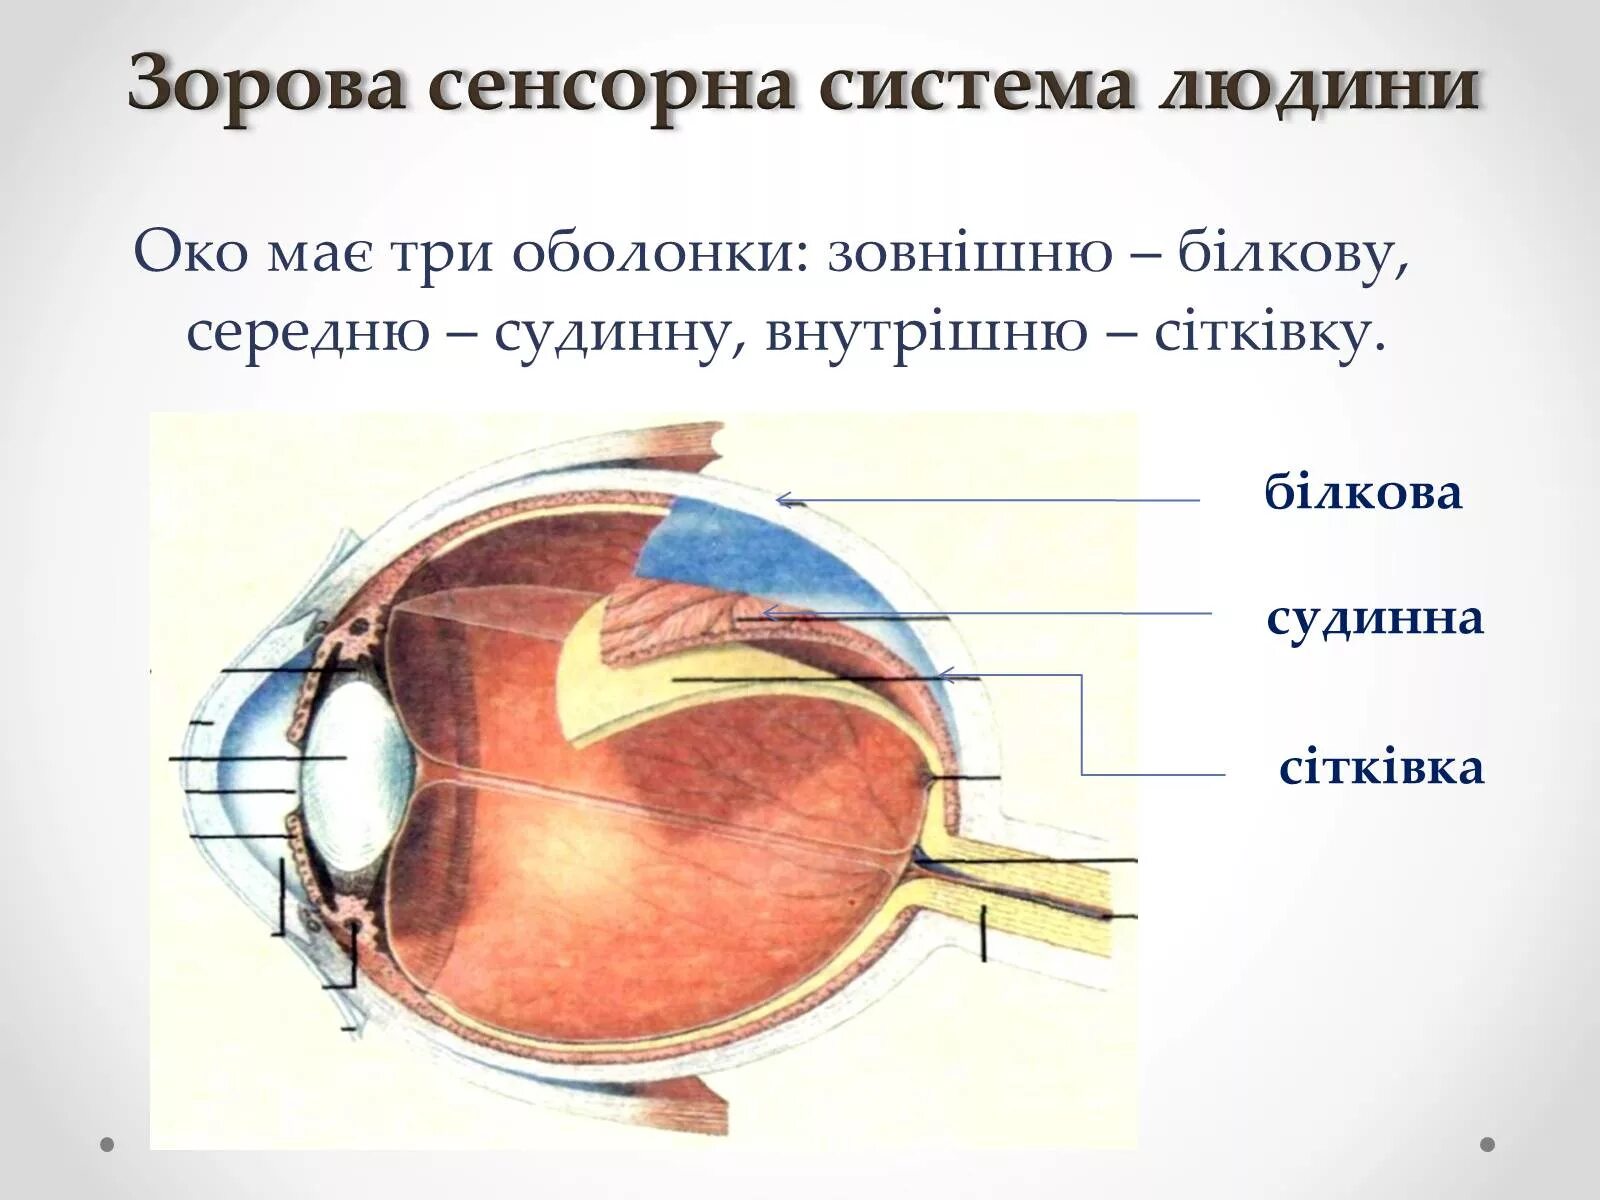 Оболочки глаза белочная сосудистая сетчатка. Строение белочной оболочки глазного яблока. Функции сосудистой белочной оболочки и сетчатки глаза. Оболочки глазного яблока анатомия функции.